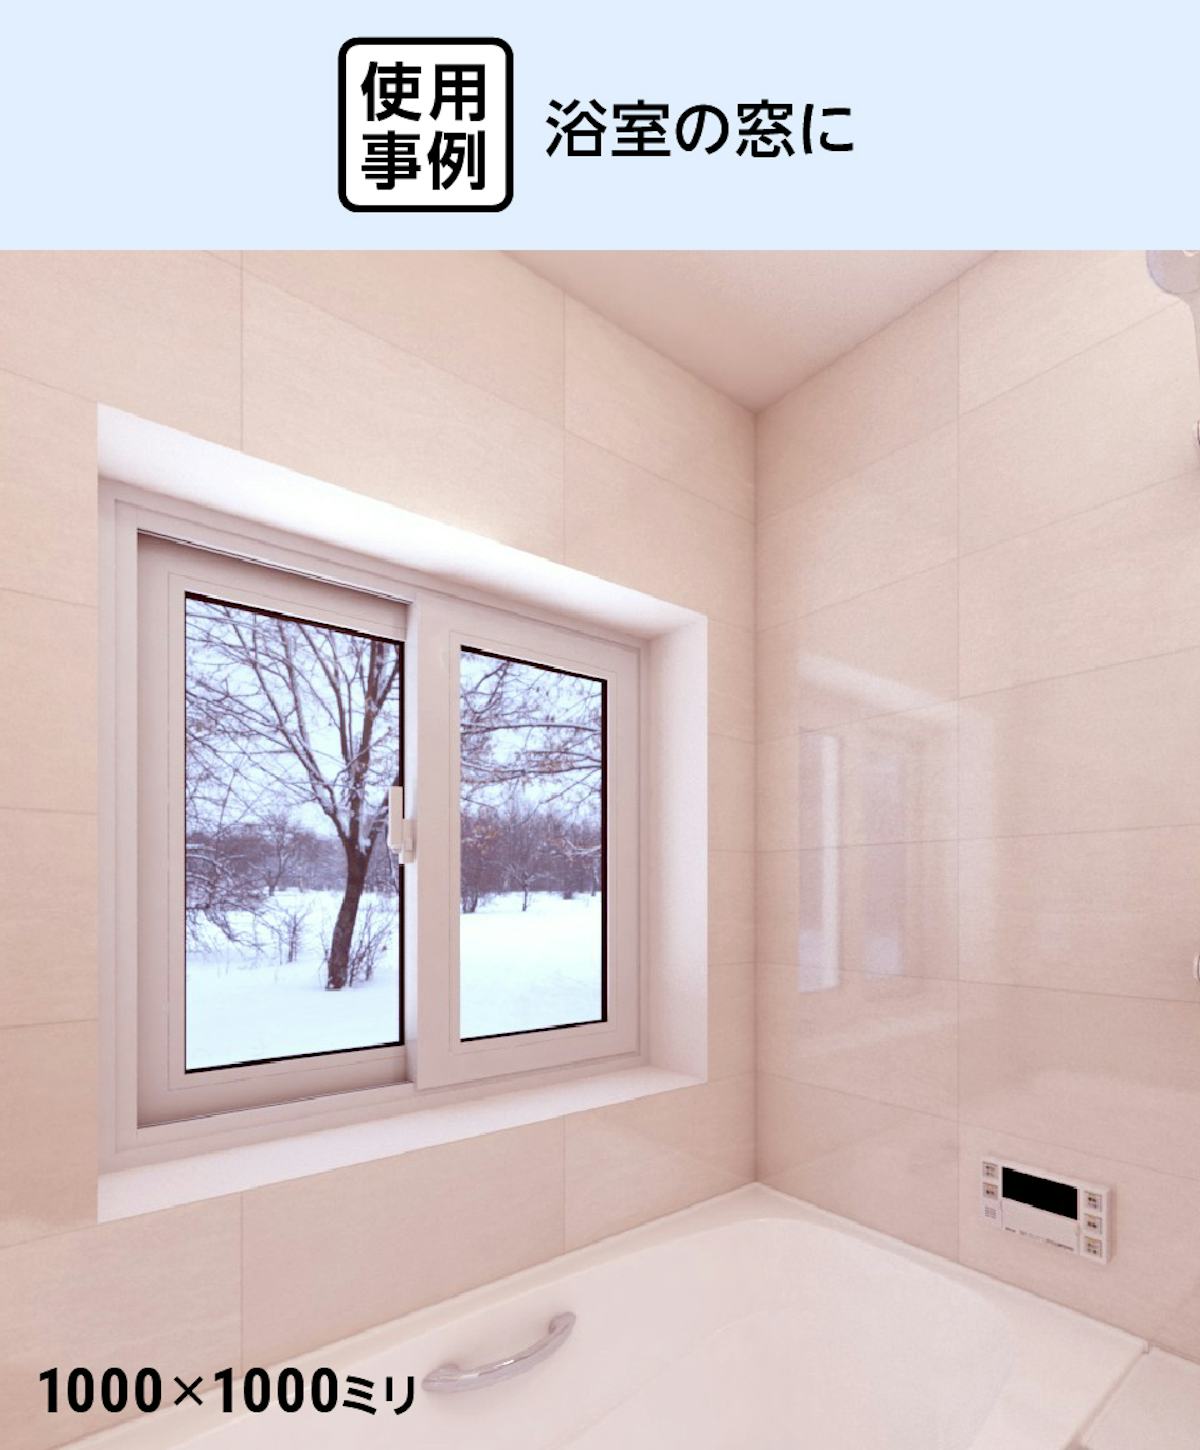 窓サッシのカバー工法 - 浴室の窓に使用した事例